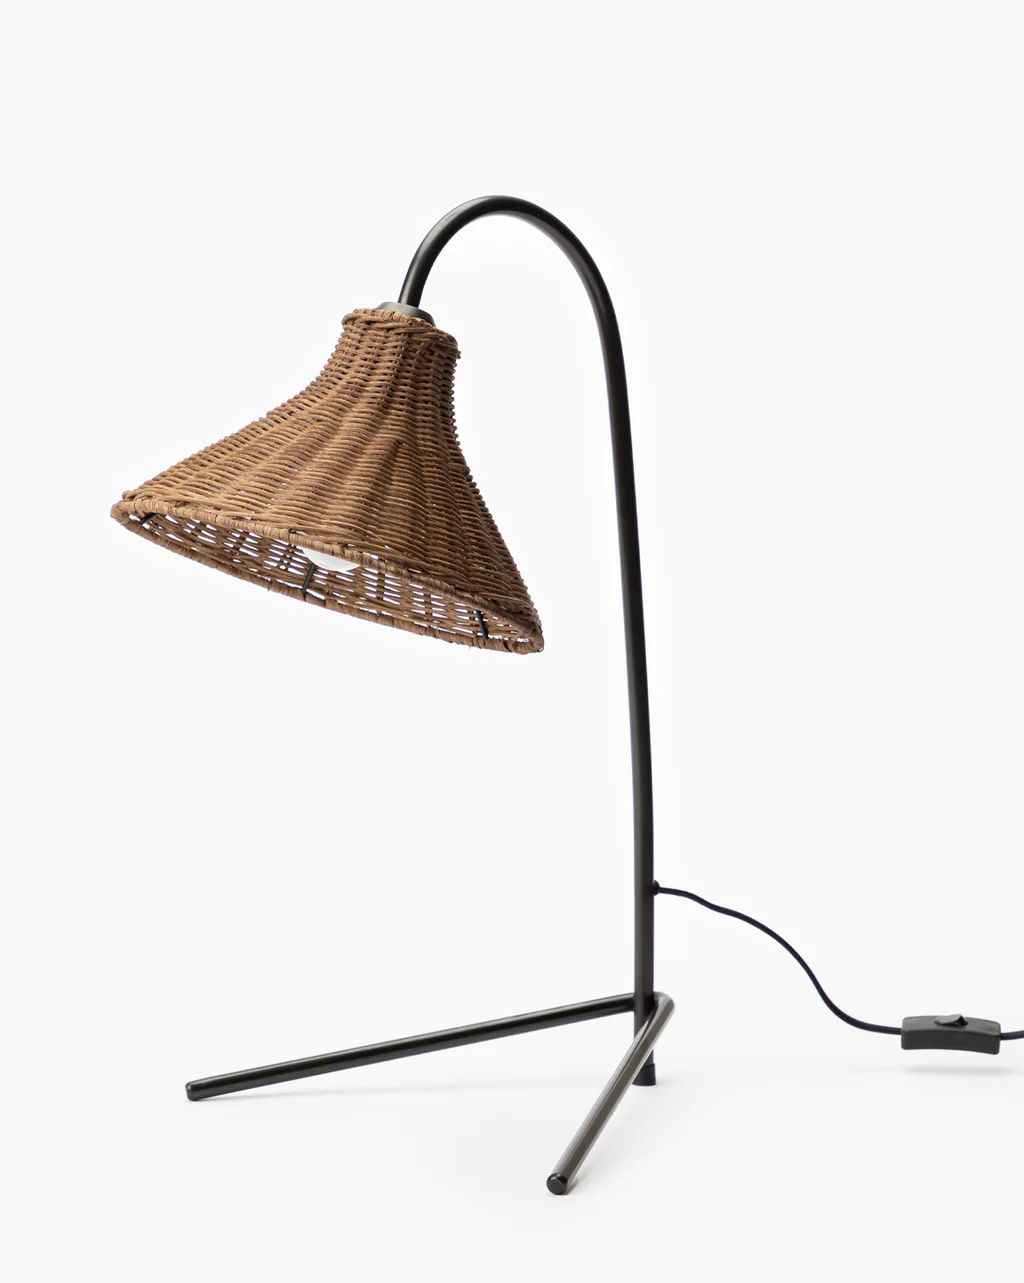 Johanson Woven Table Lamp | McGee & Co.